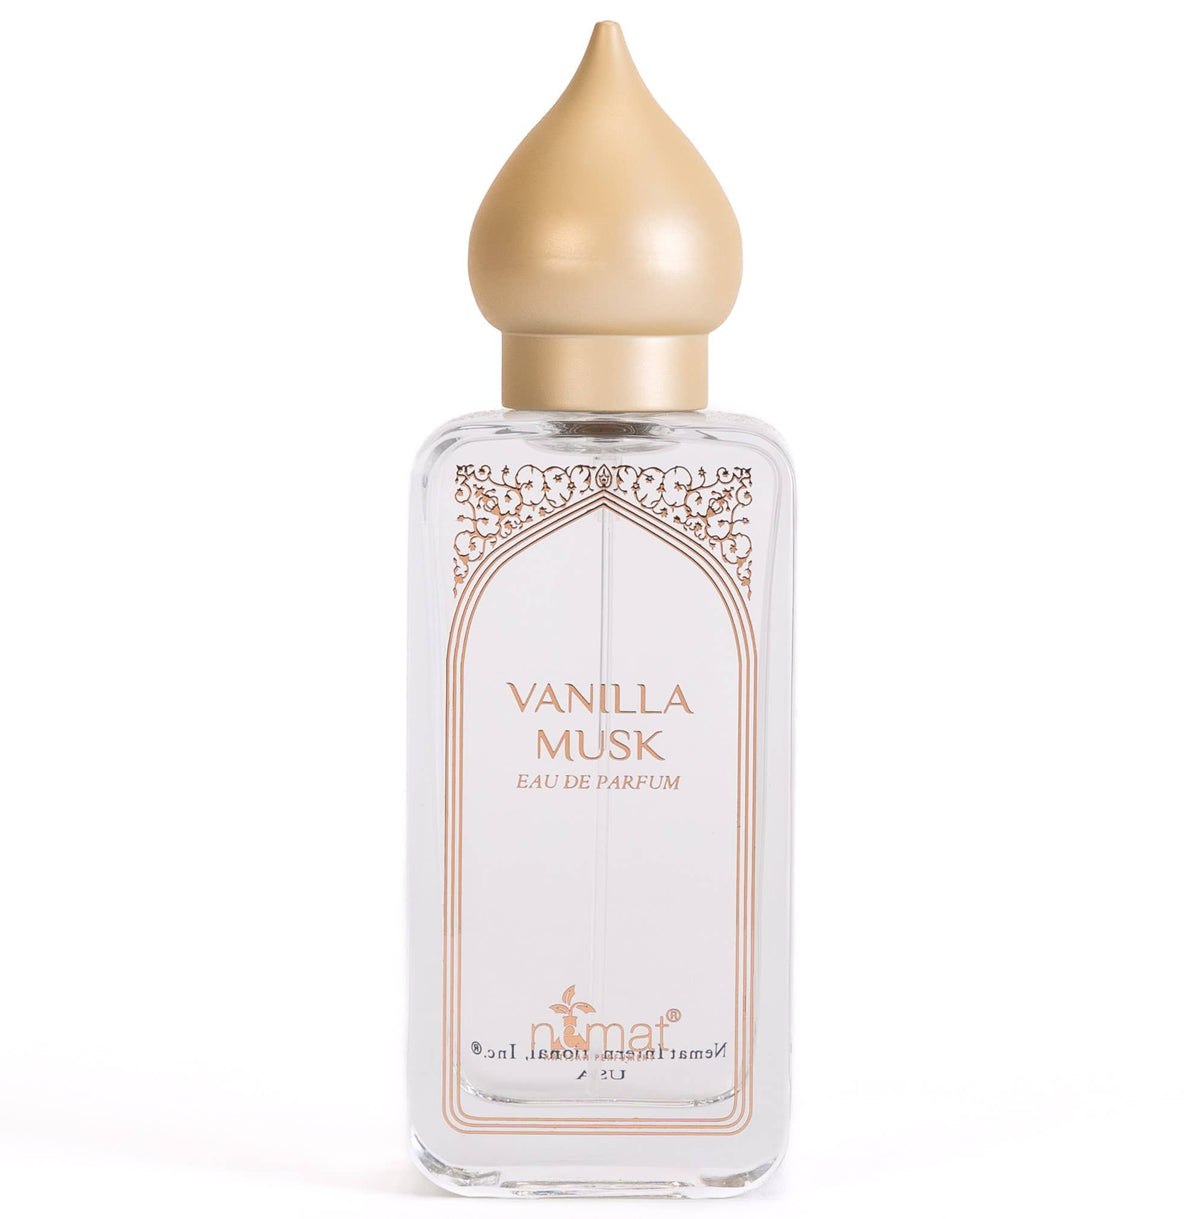 Clear glass bottle with tan teardrop lid reading "vanilla musk eau de parfum by nemat" on the front